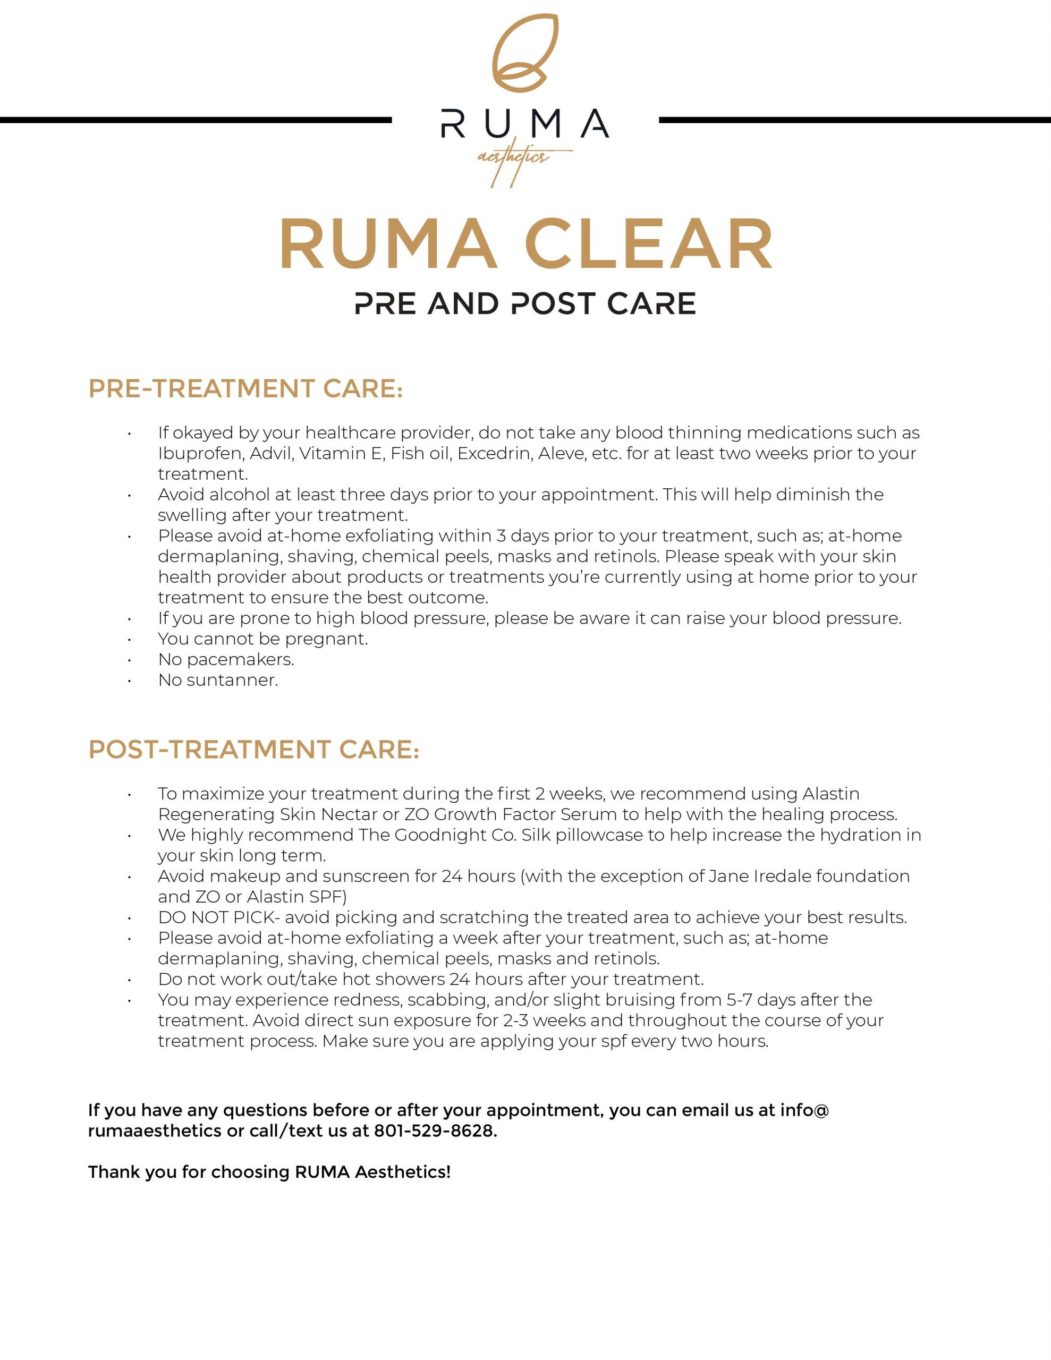 RUMA_RumaClear-Ruma Medical Aesthetics - UT - RumaAesthetic